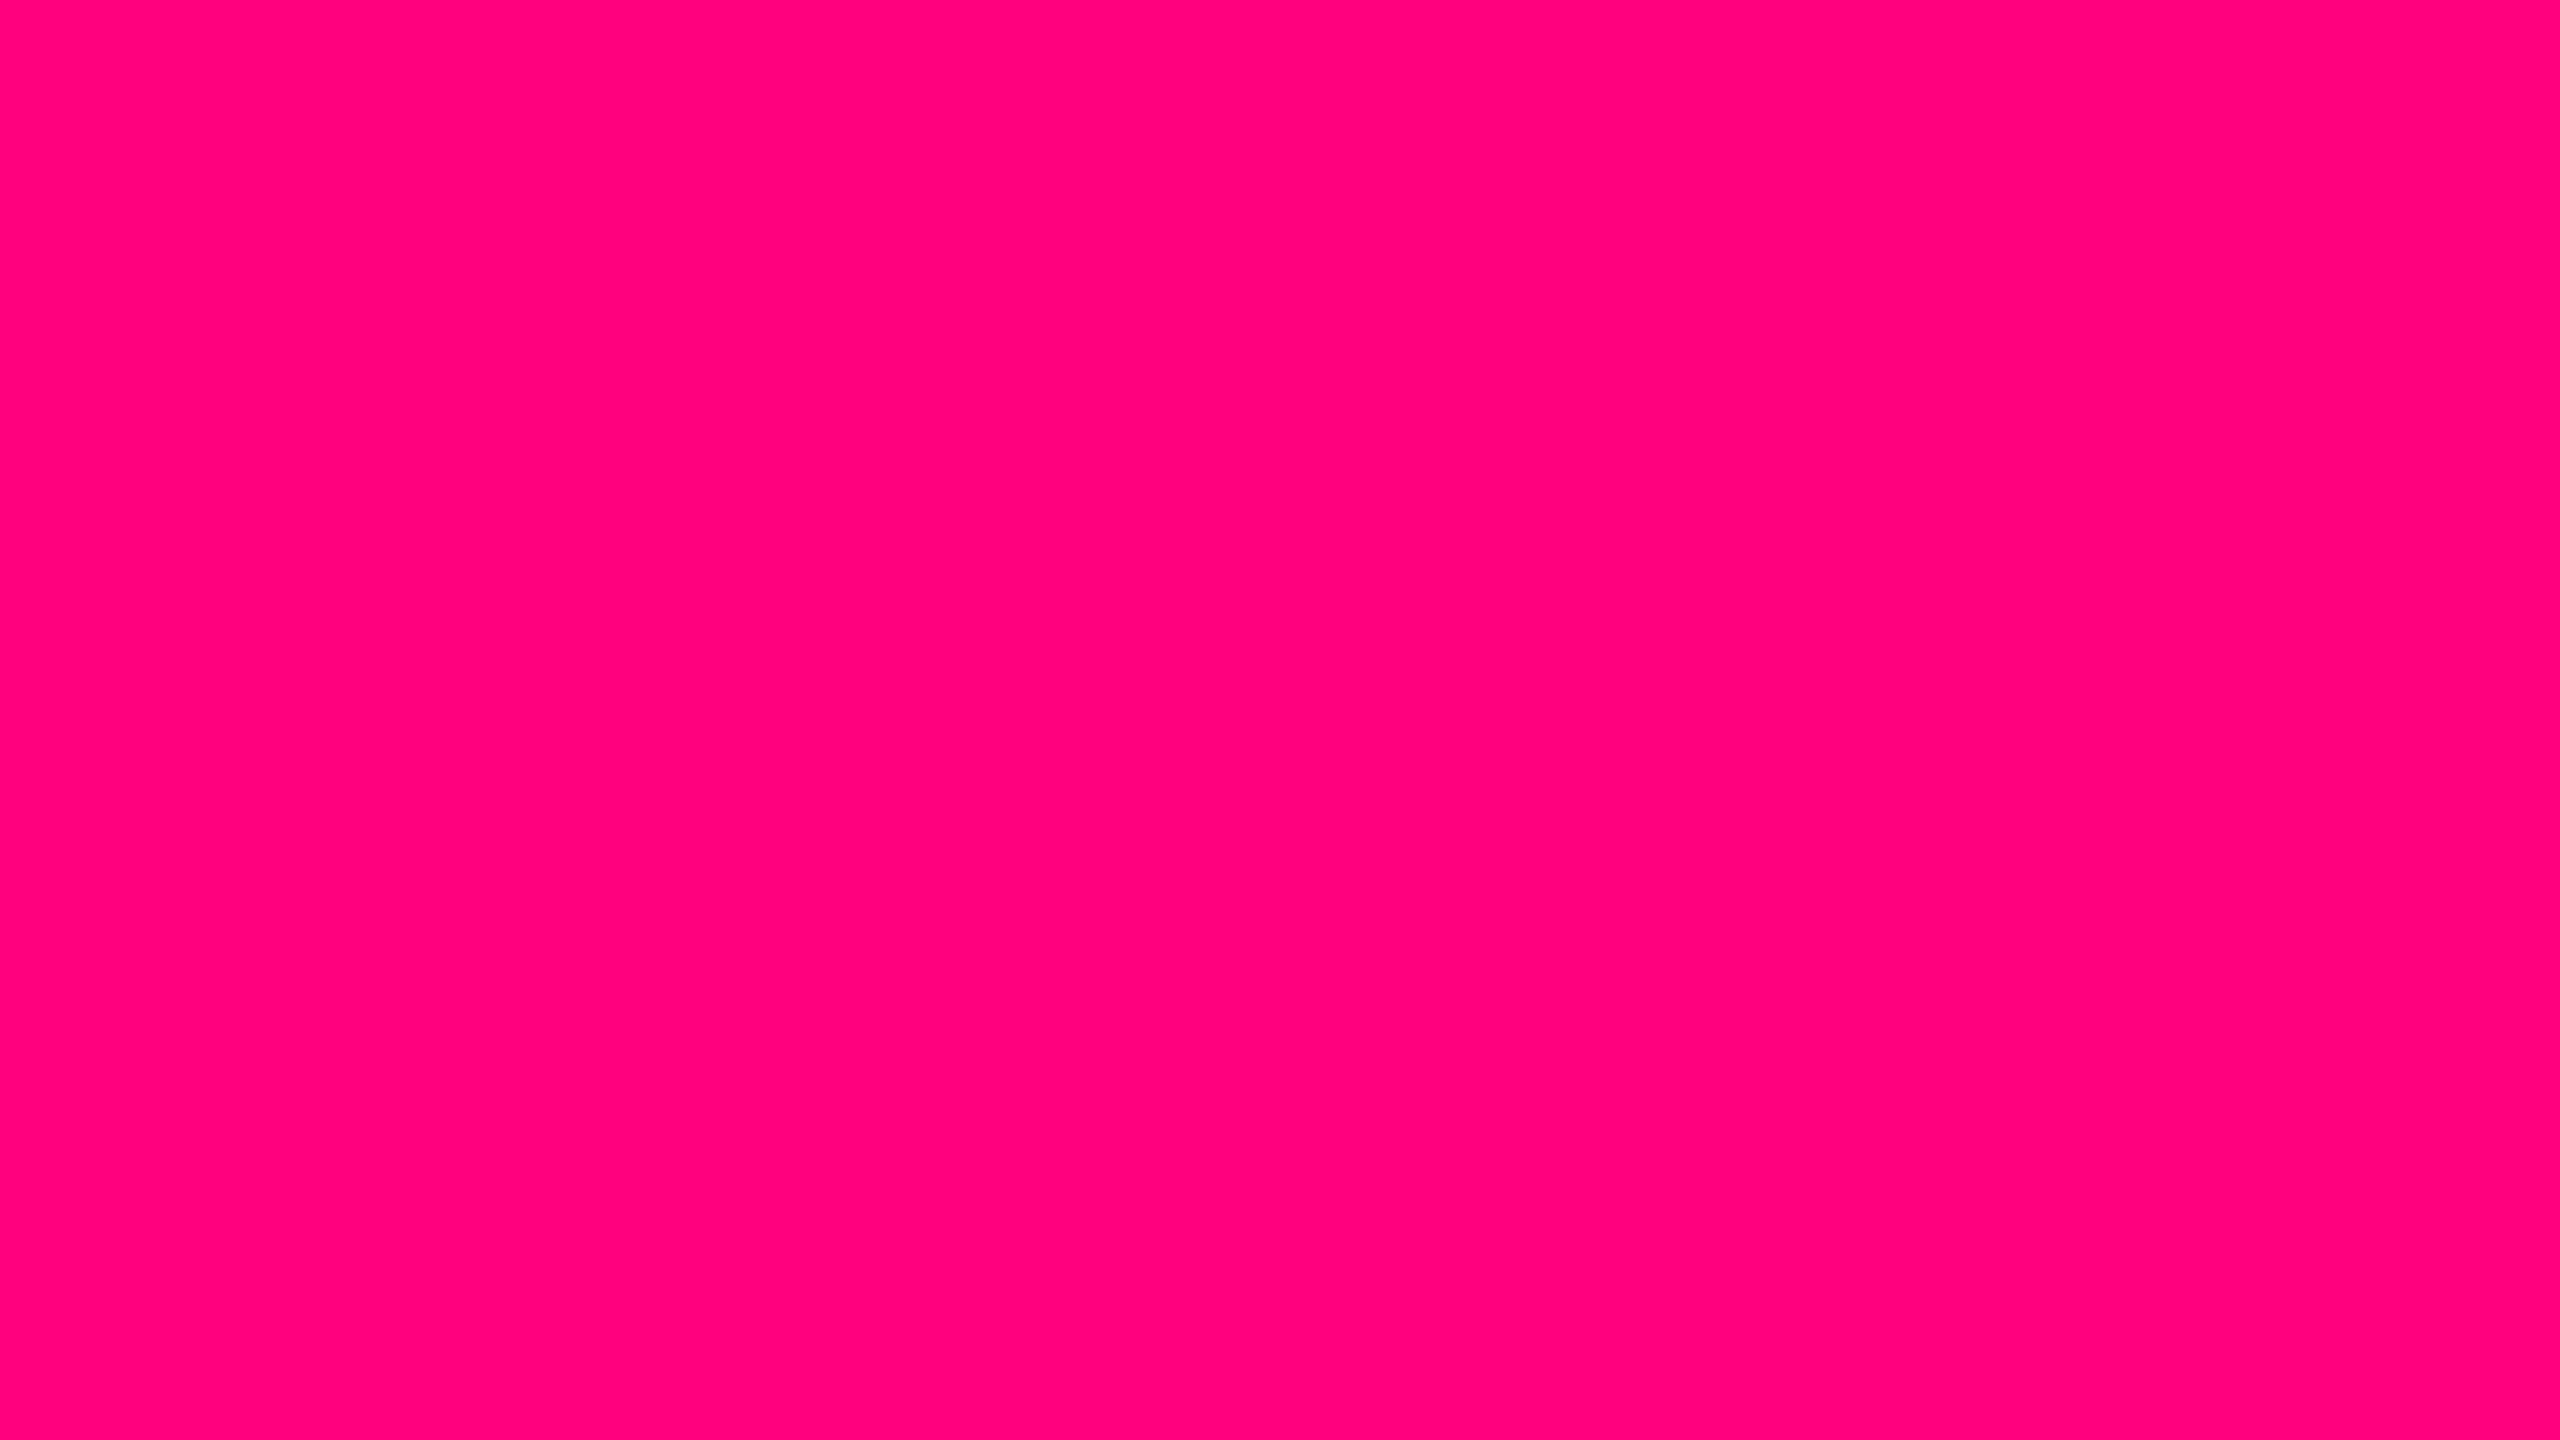 Tổng hợp 999 Bright pink backgrounds đẹp nhất, tải miễn phí